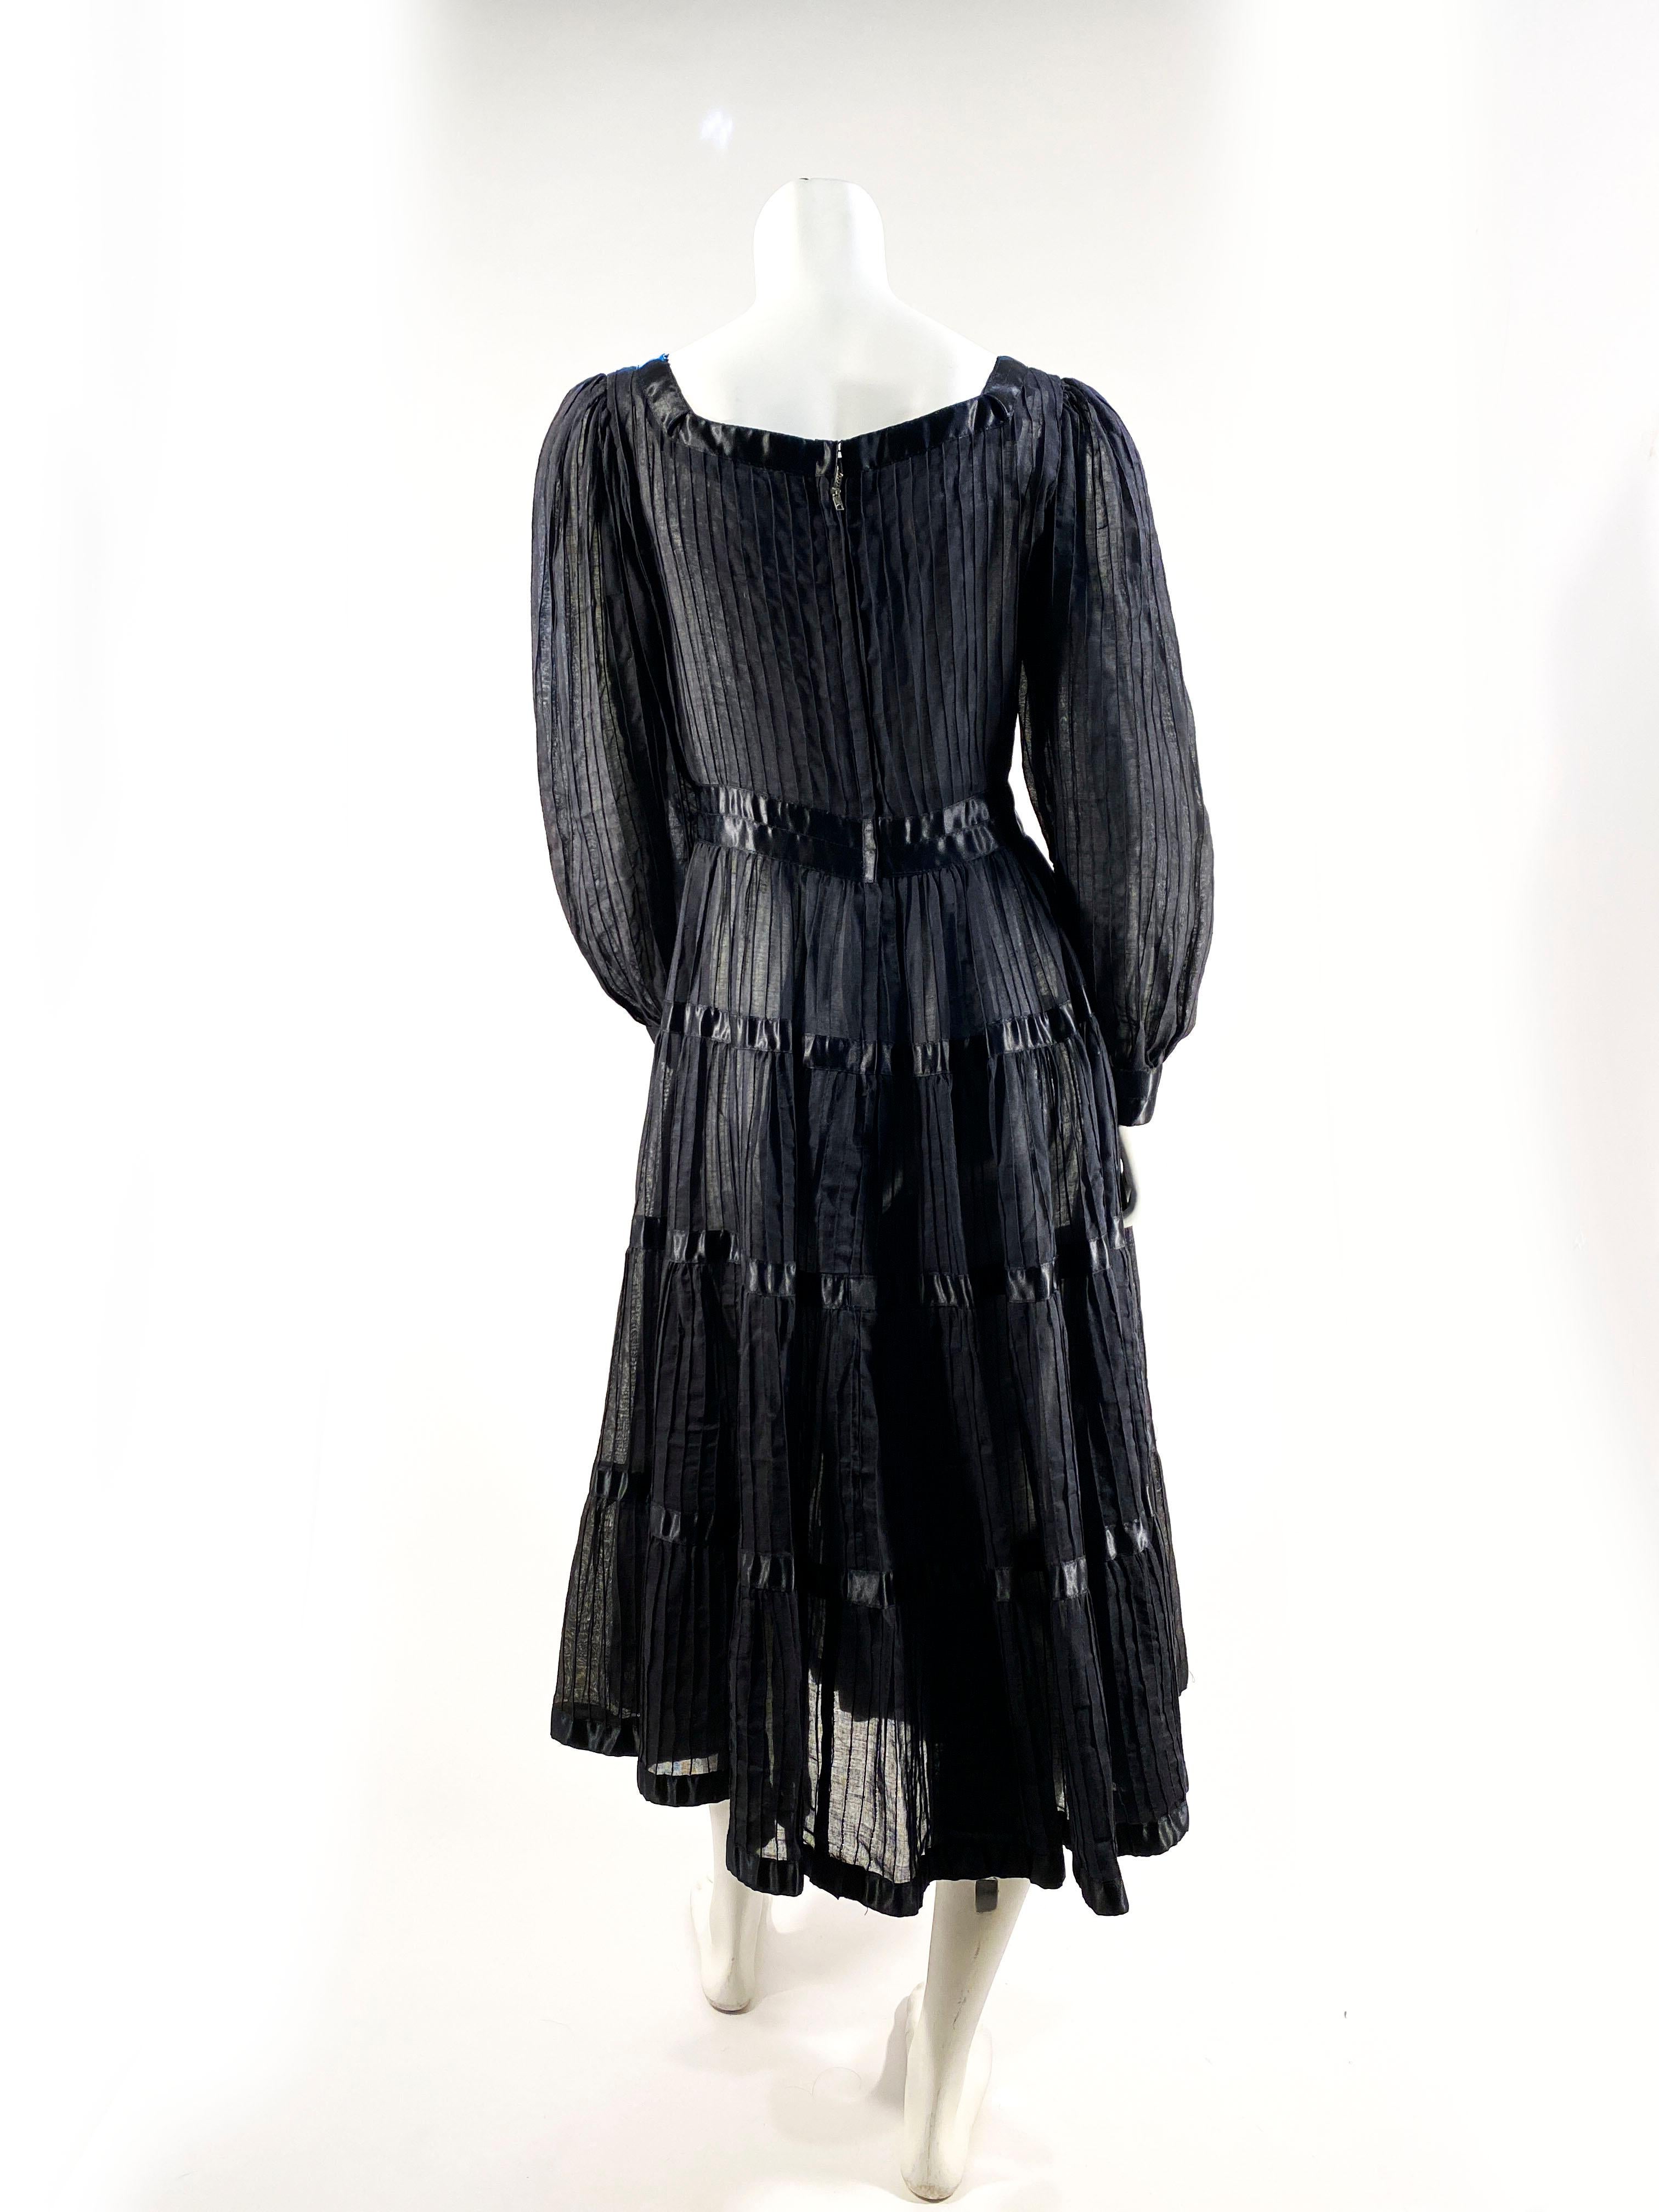 Women's 1960s Black Cotton Peasant/Bohemian Dress For Sale